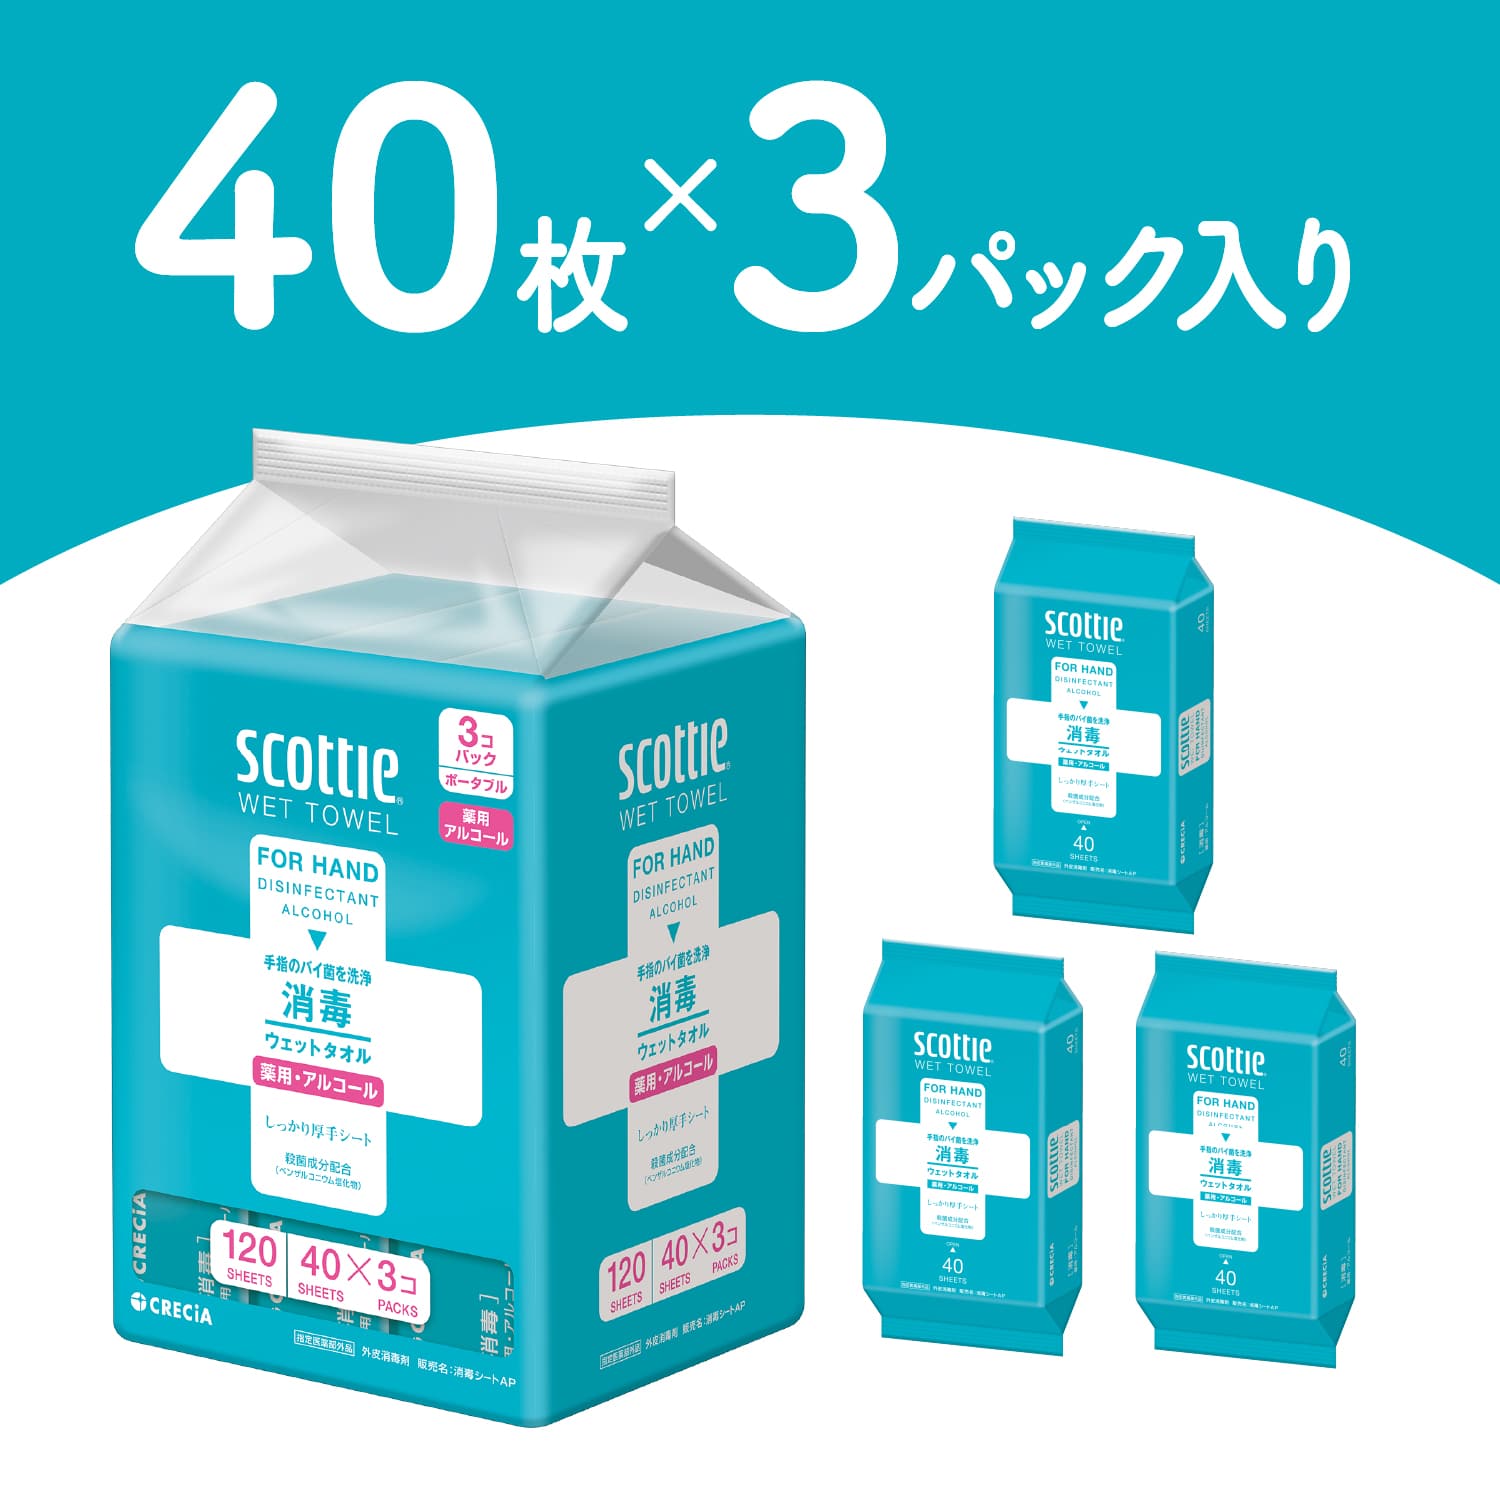 スコッティ ウェットタオル 消毒 アルコールタイプ 40枚3個×12パック(36個) scottie 指定医薬部外品 日本製 日本製紙クレシア